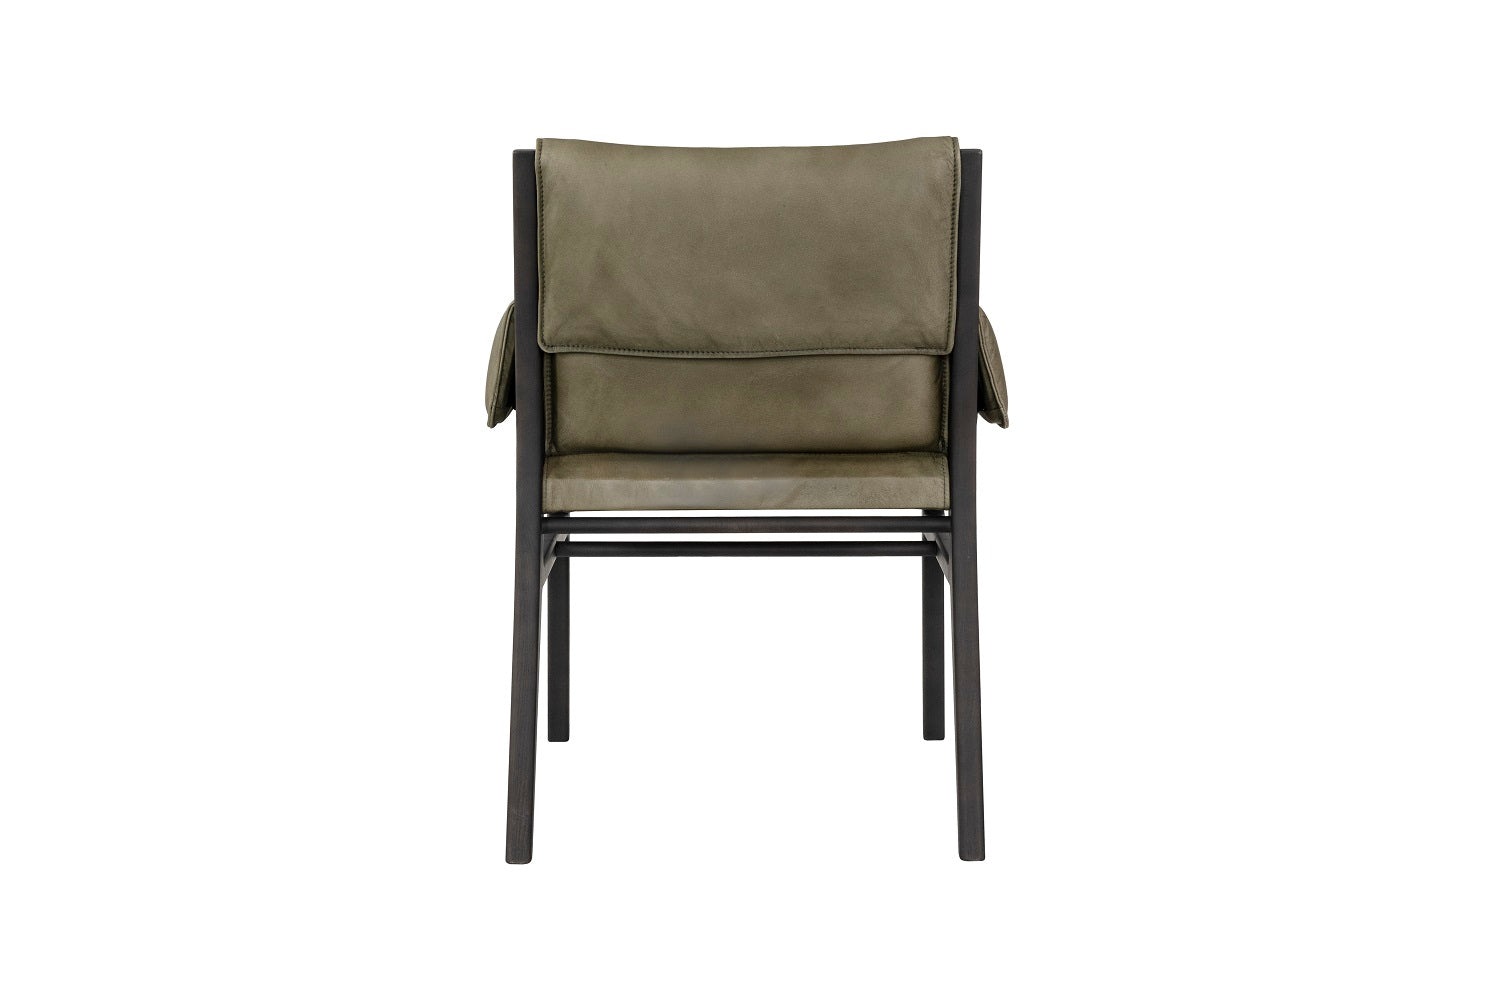  Moderner Stuhl mit Lederarmlehne und Holzrahmen | Modell CELIO